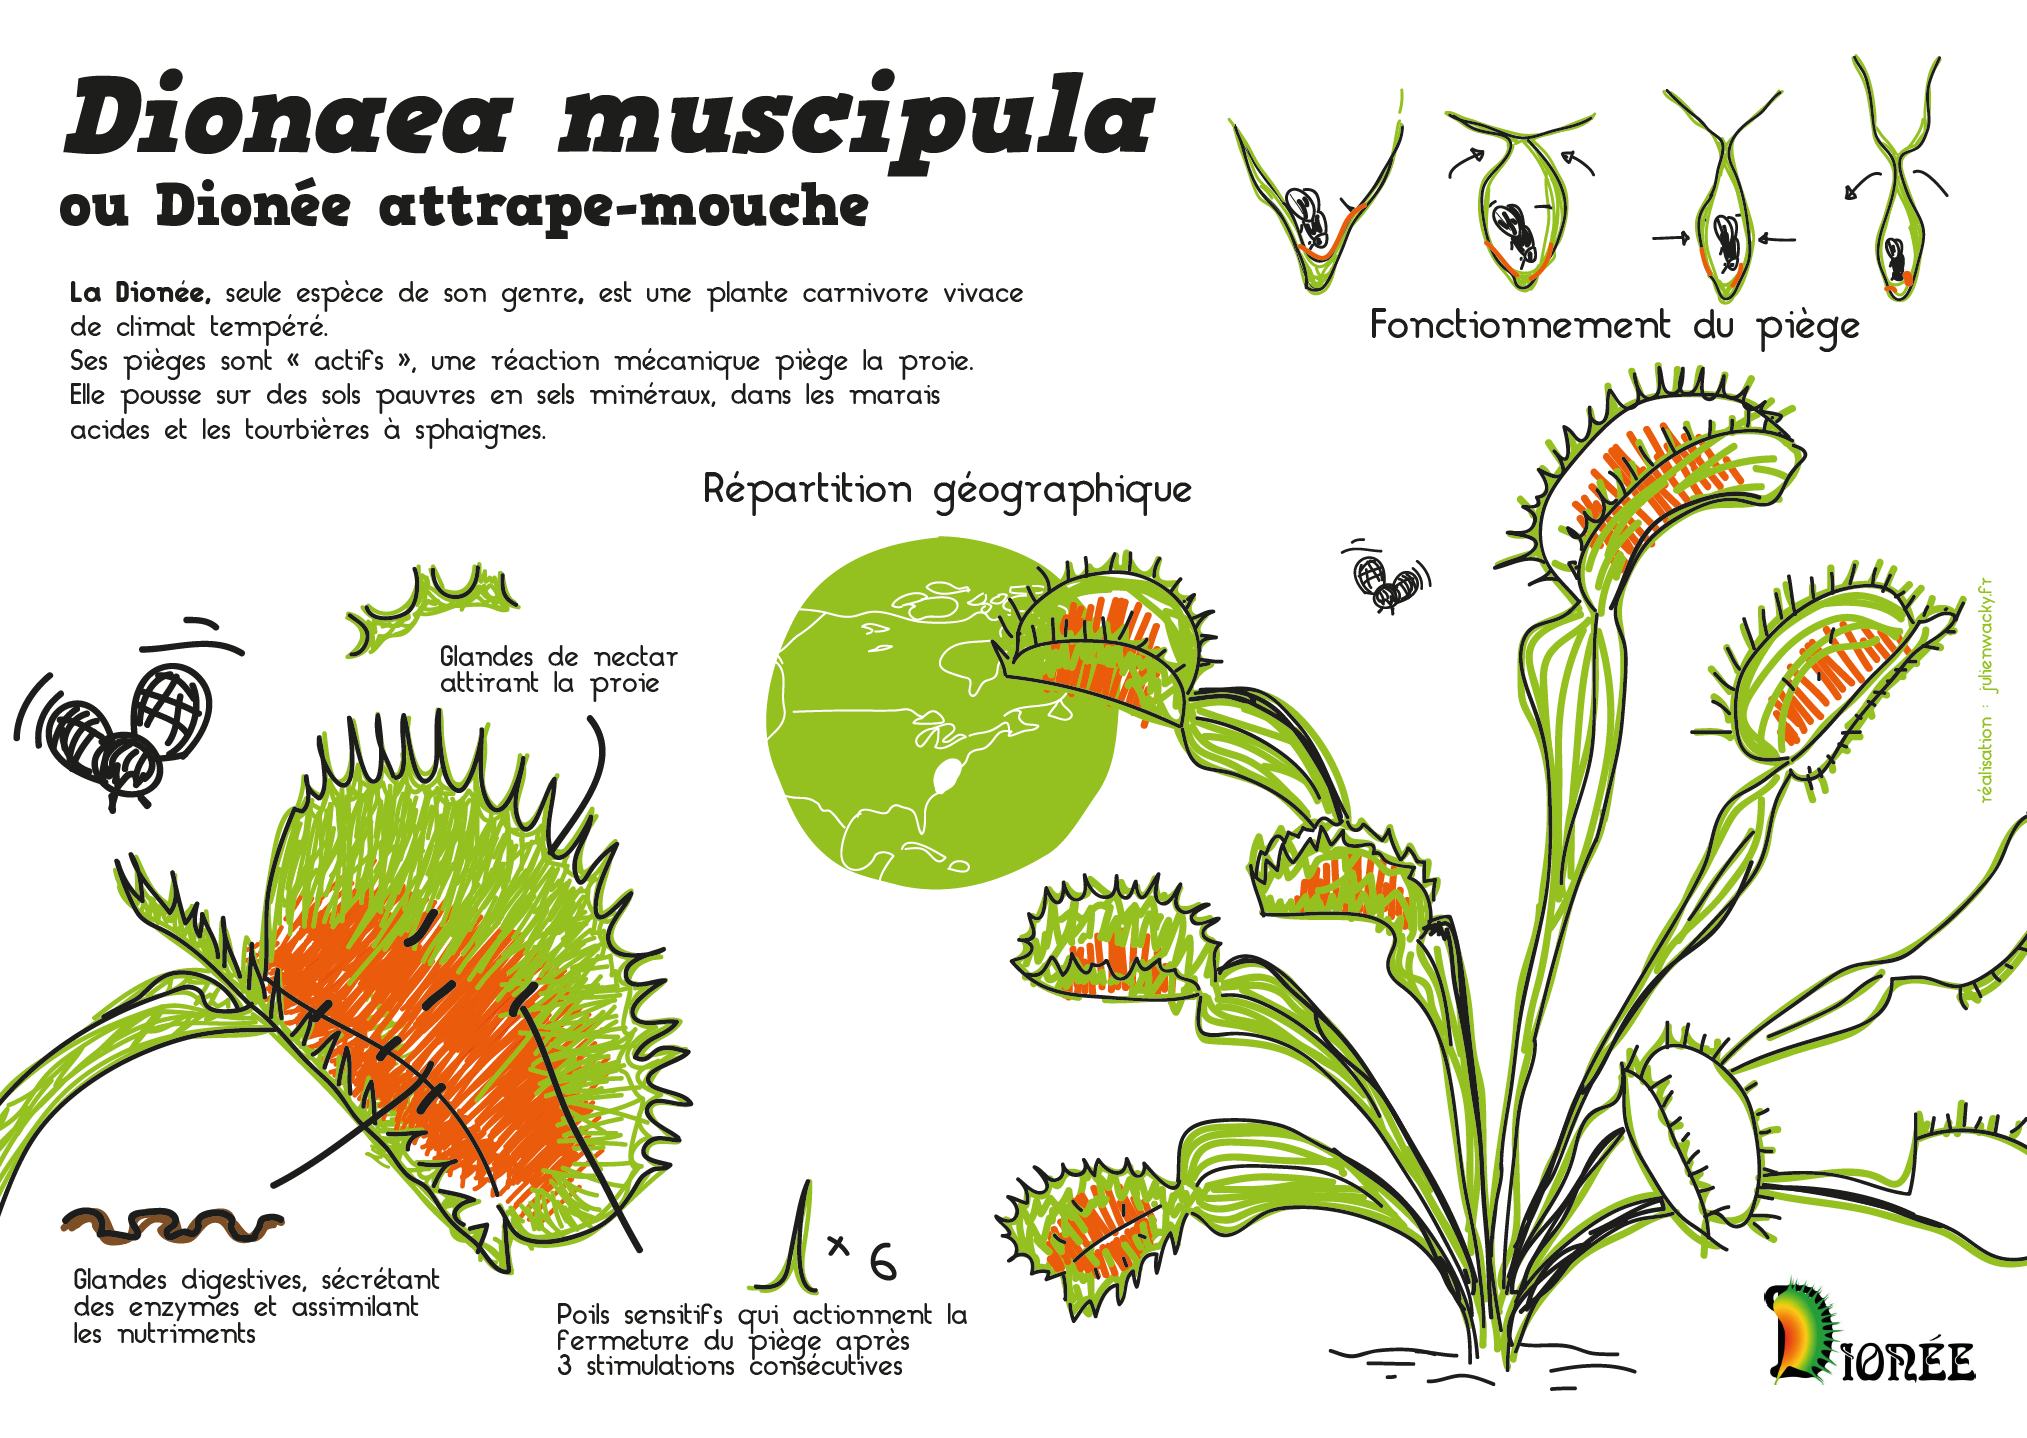 Dionaea muscipula – Dionée attrape mouche